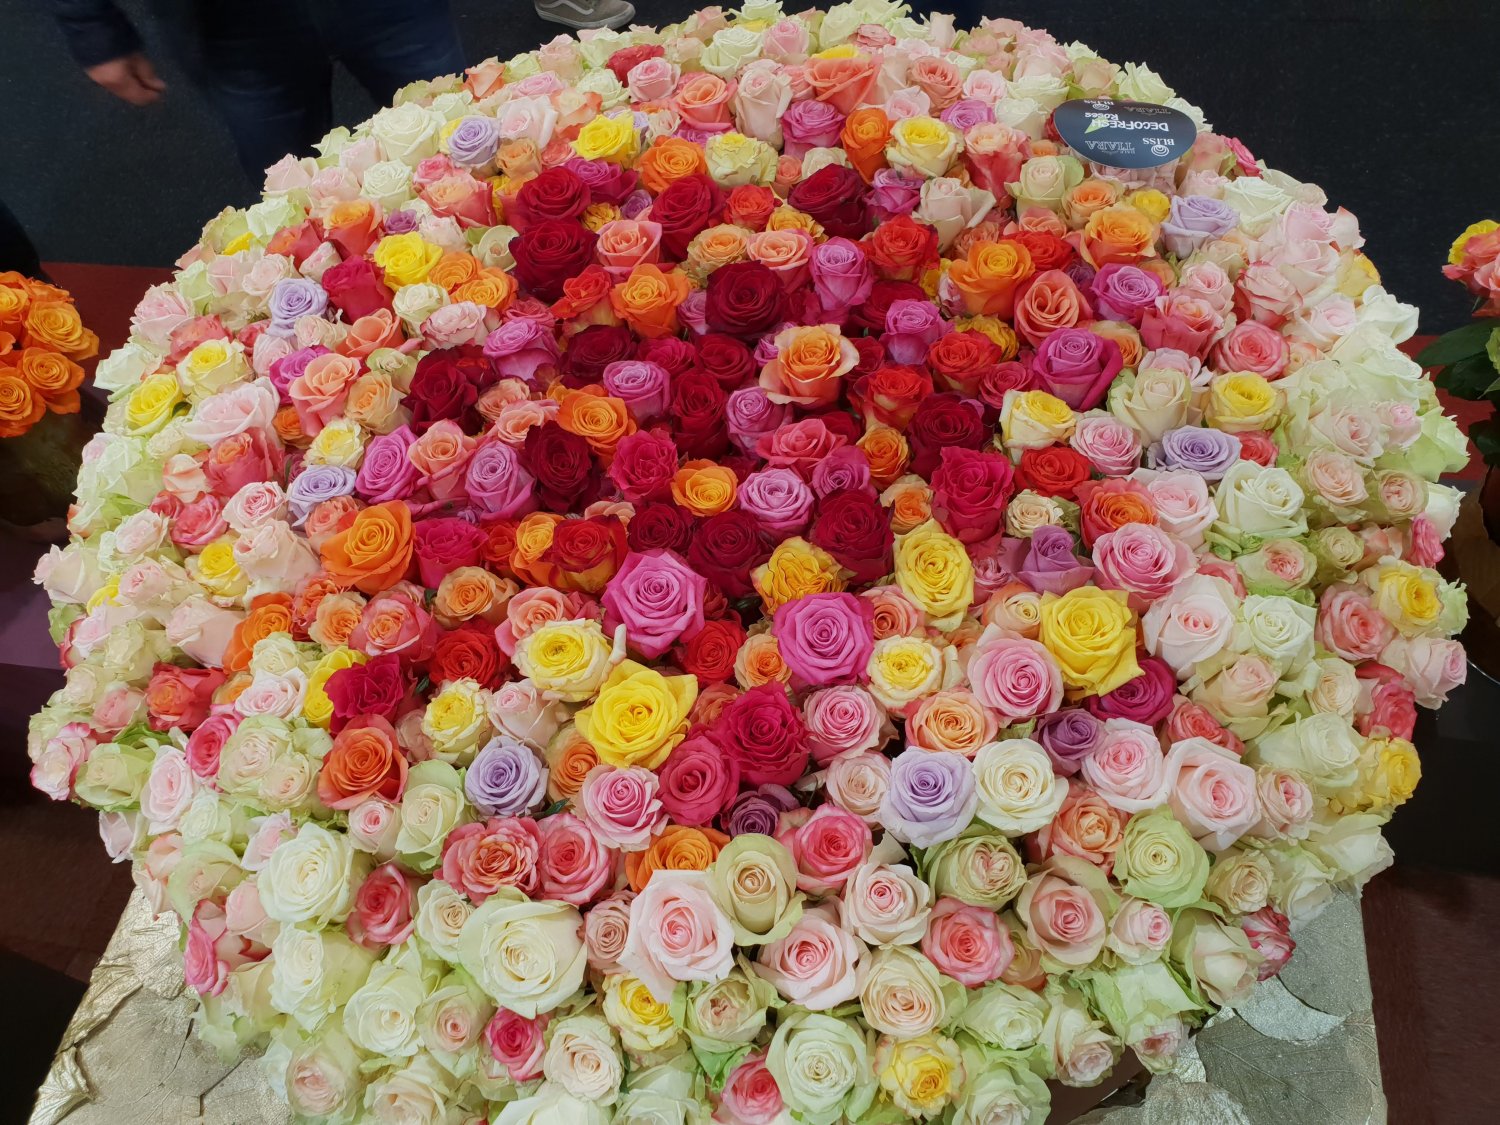 Obří květy a krásné barvy růží z Ekvádoru